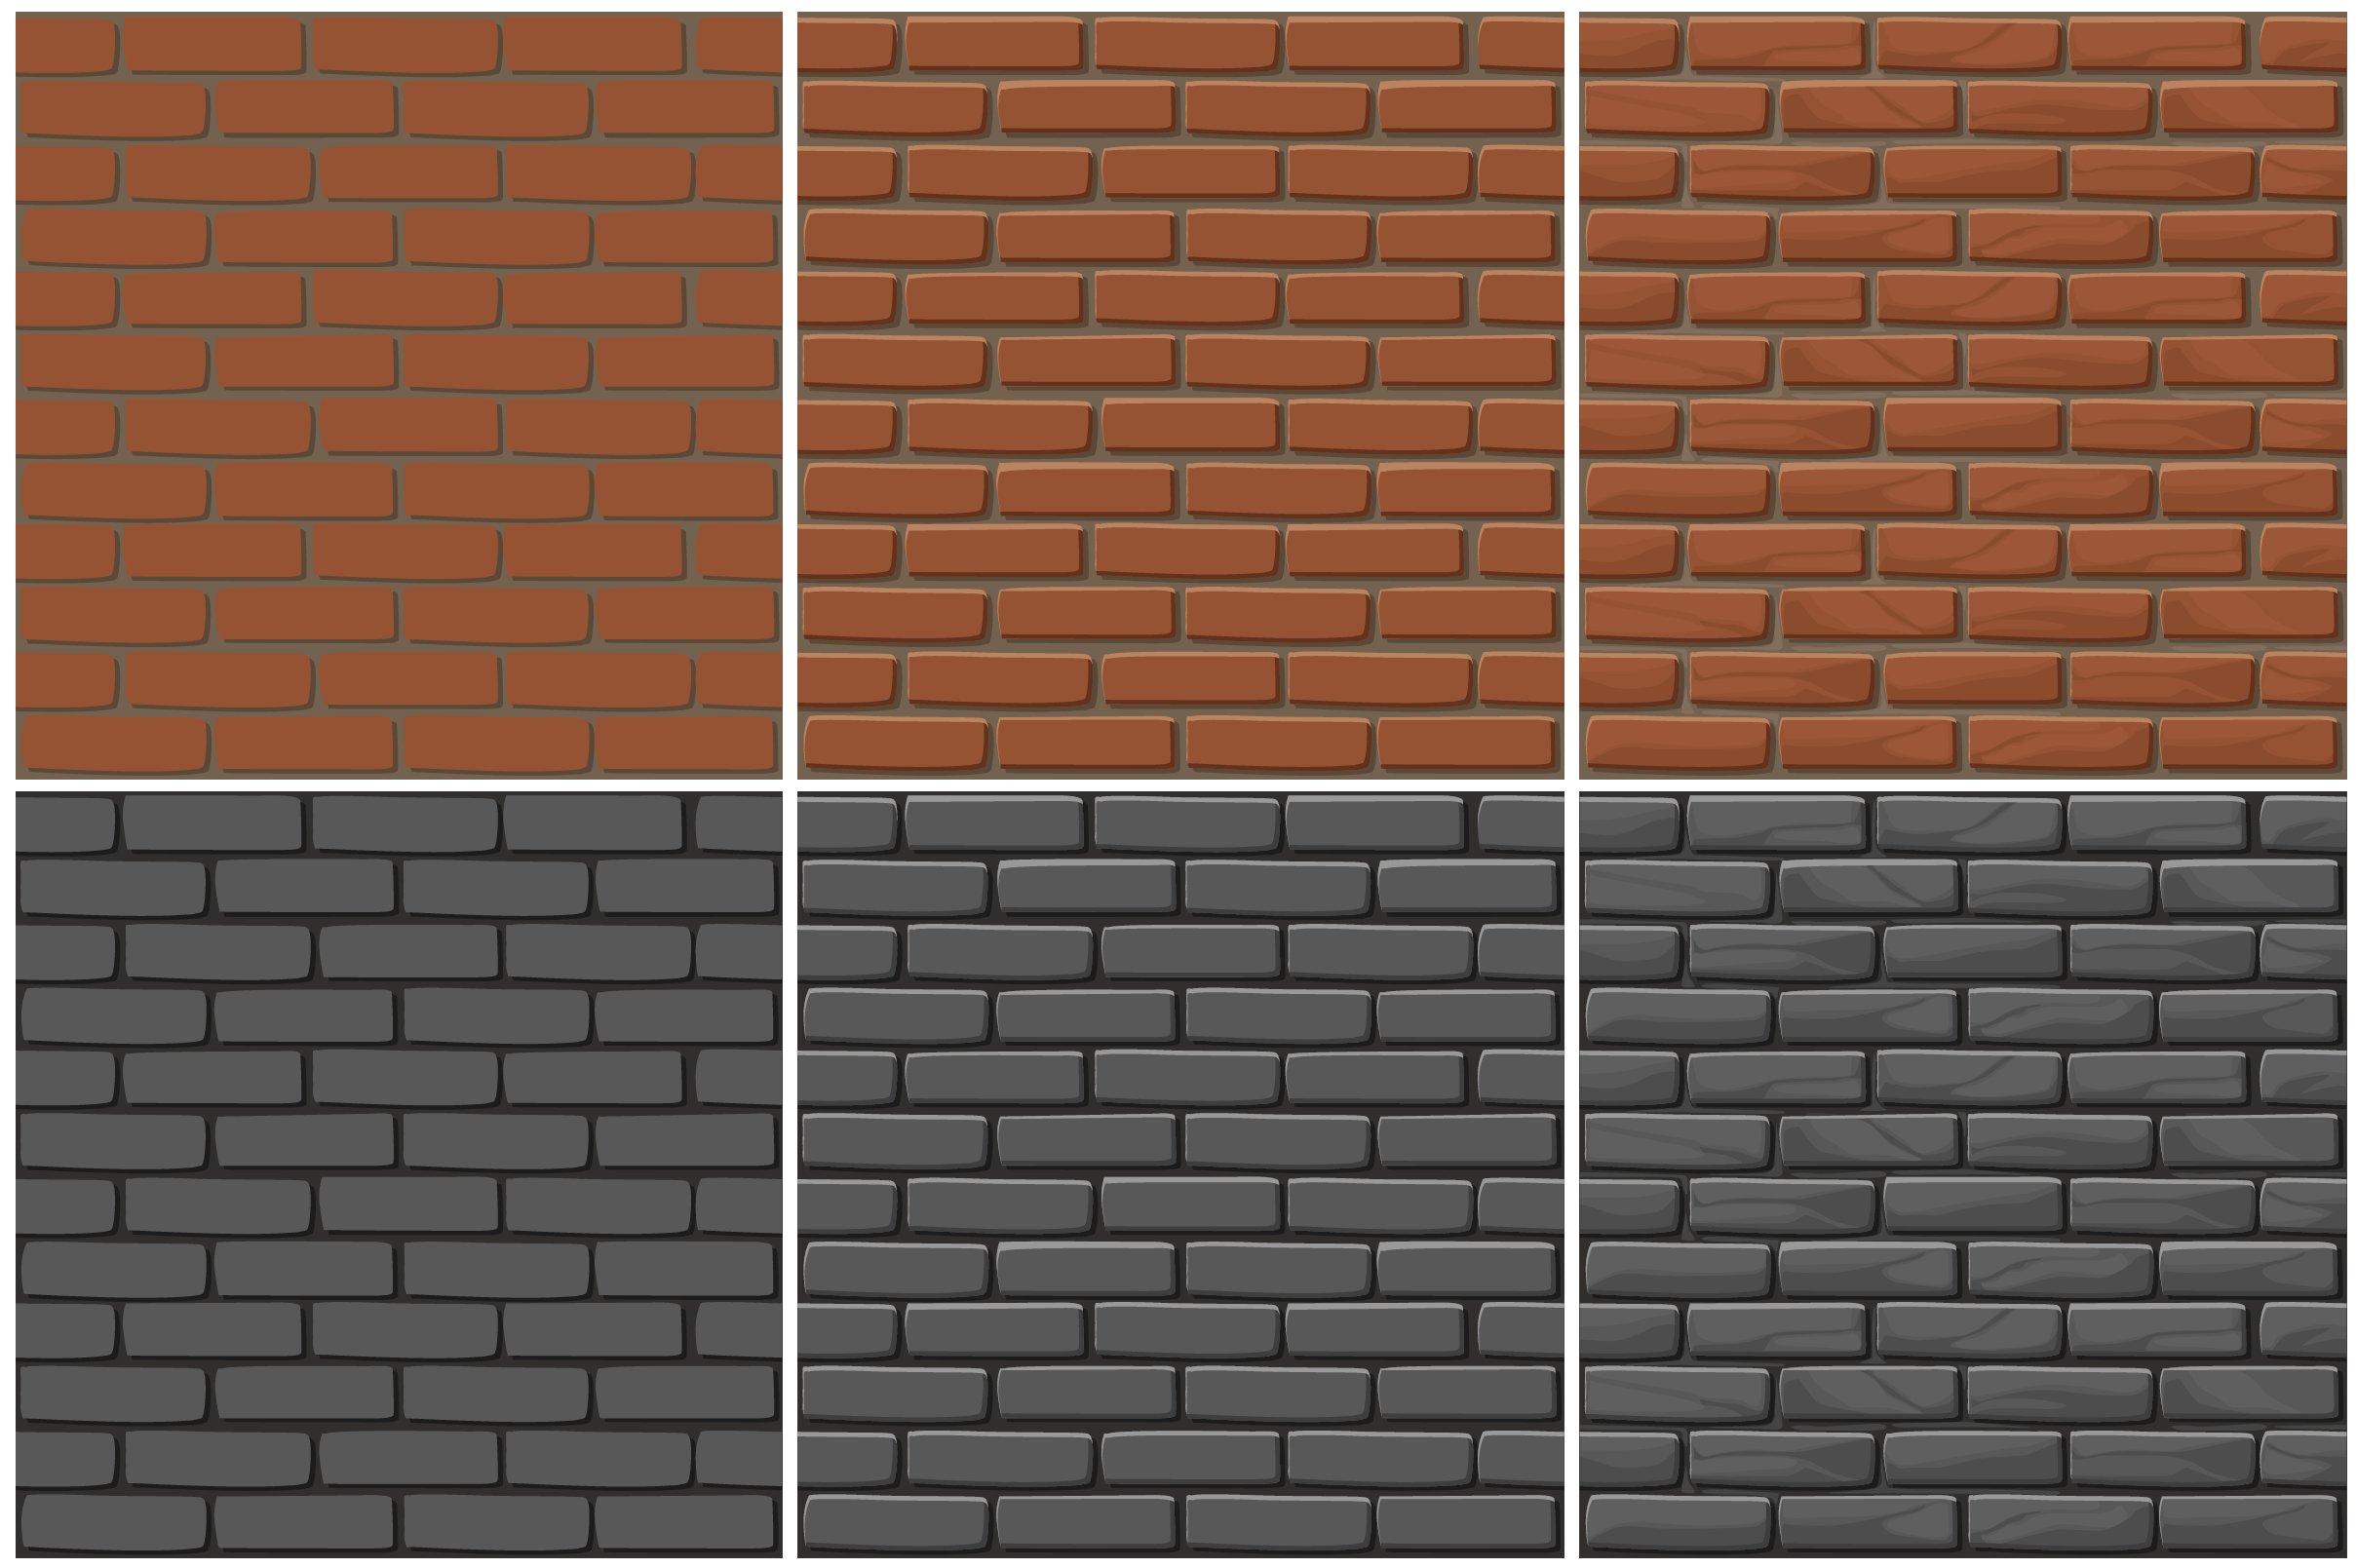 brick wall texture 3 step drawing 01 492